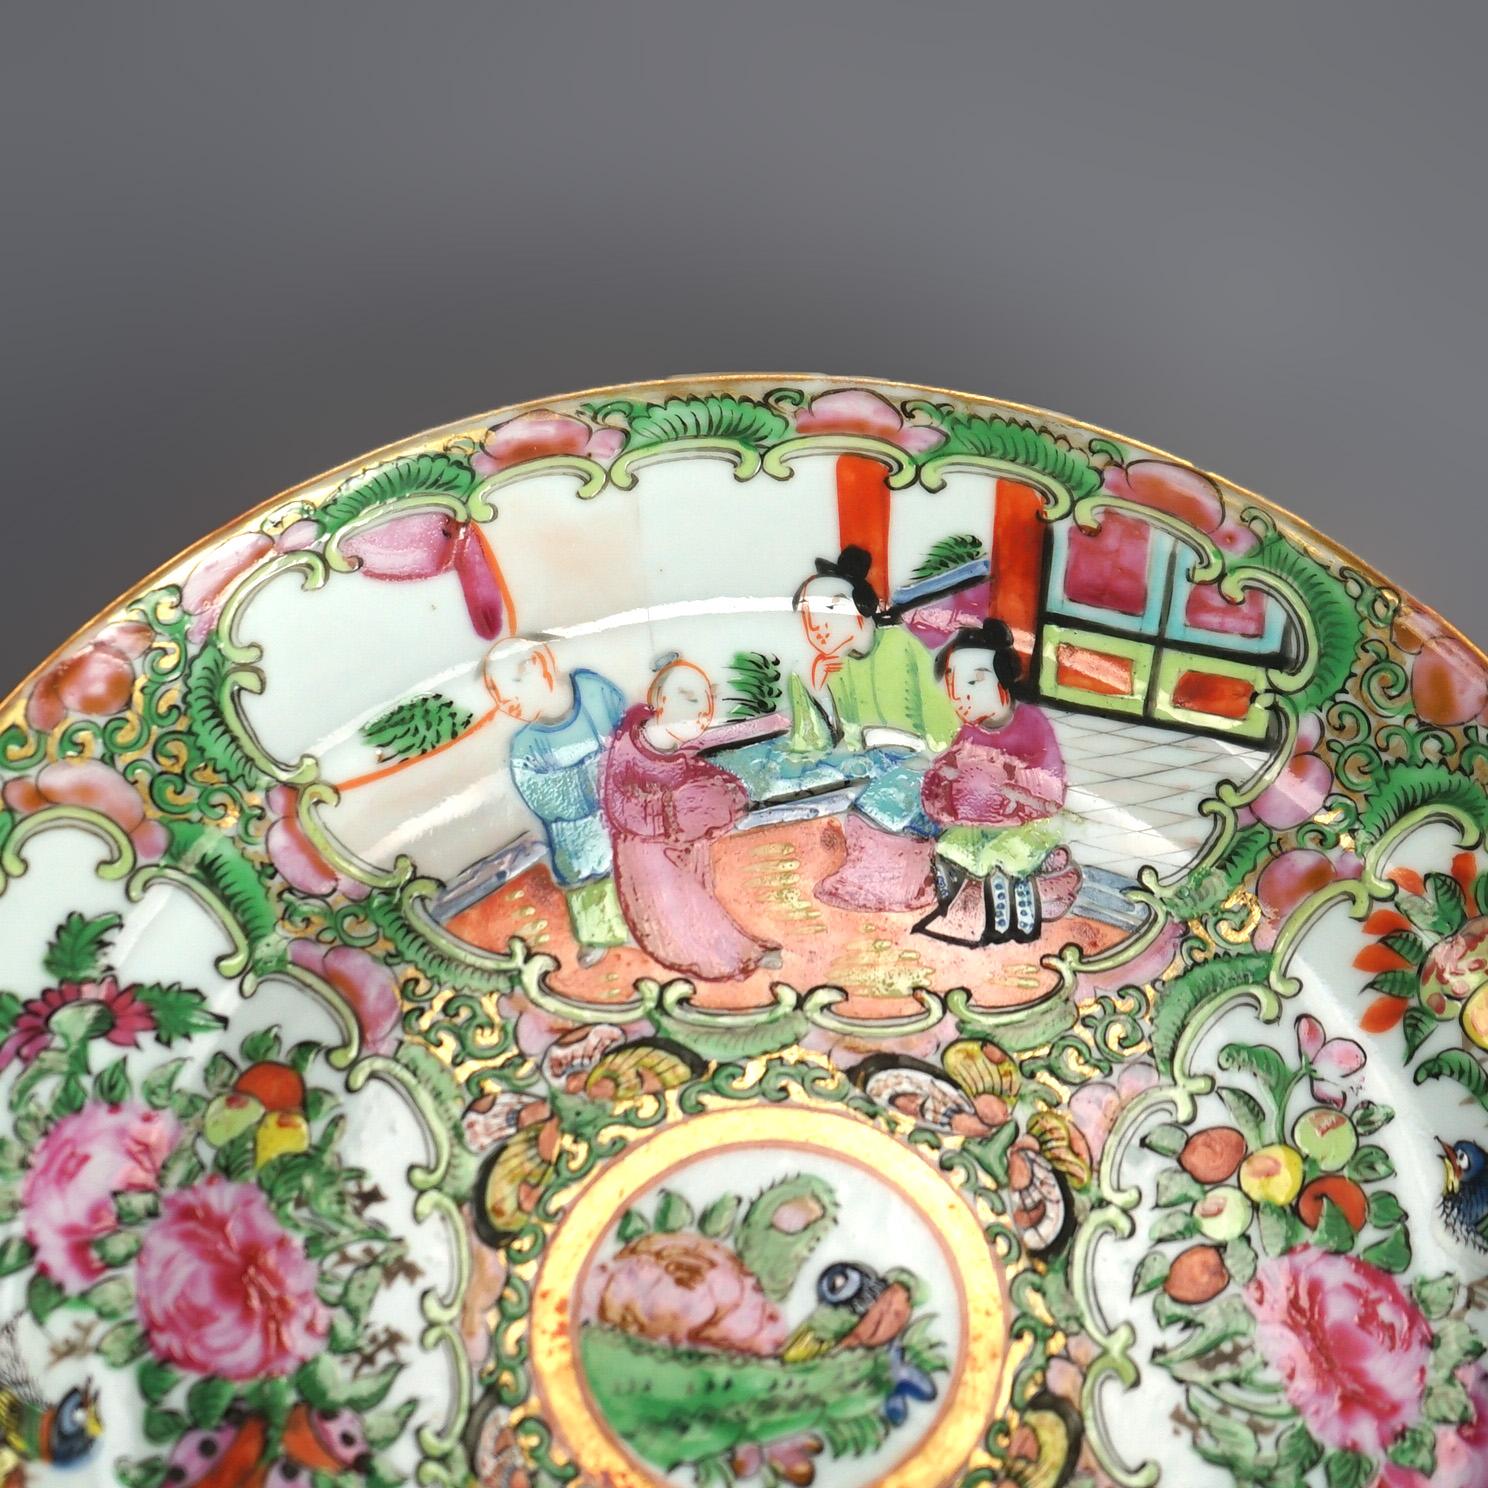 Antike chinesische Rose Medaillon Porzellanteller mit Reserven mit Gärten & Genre Szenen C1900

Maße - 1 